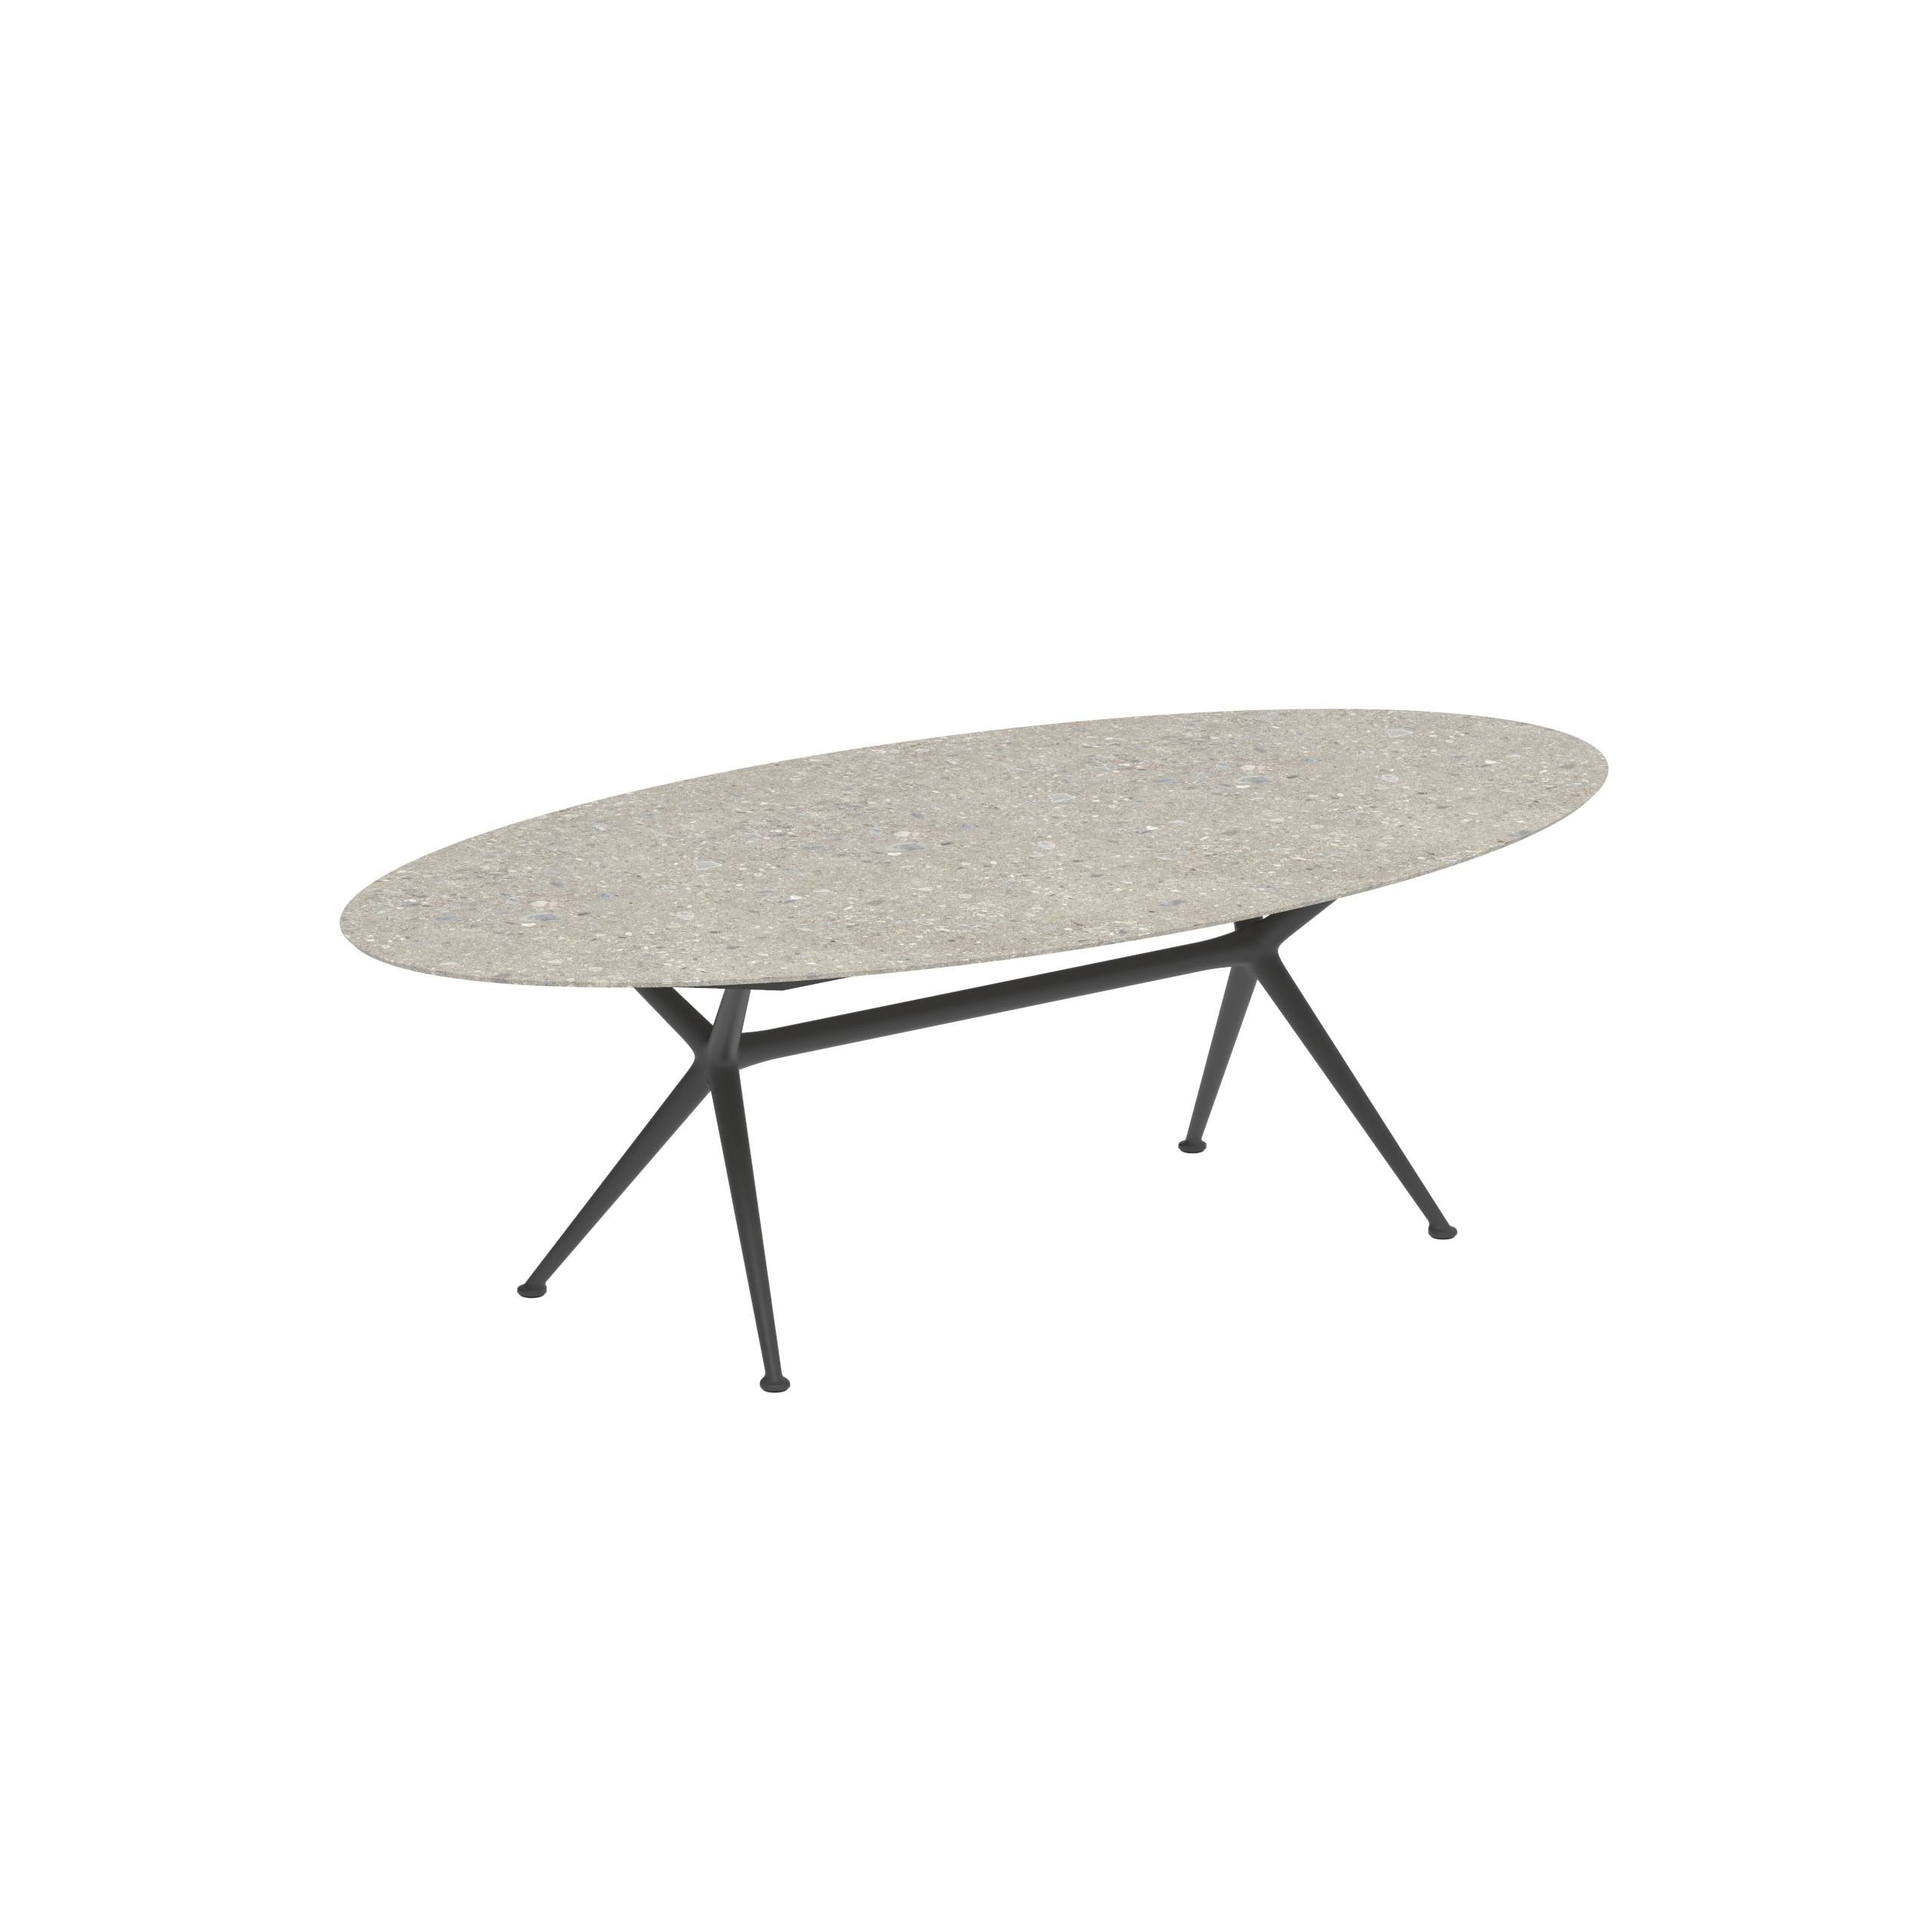 Exes Table Ellipse 250x130cm Alu Legs Anthracite - Table Top Ceramic Ceppo Dolomitica